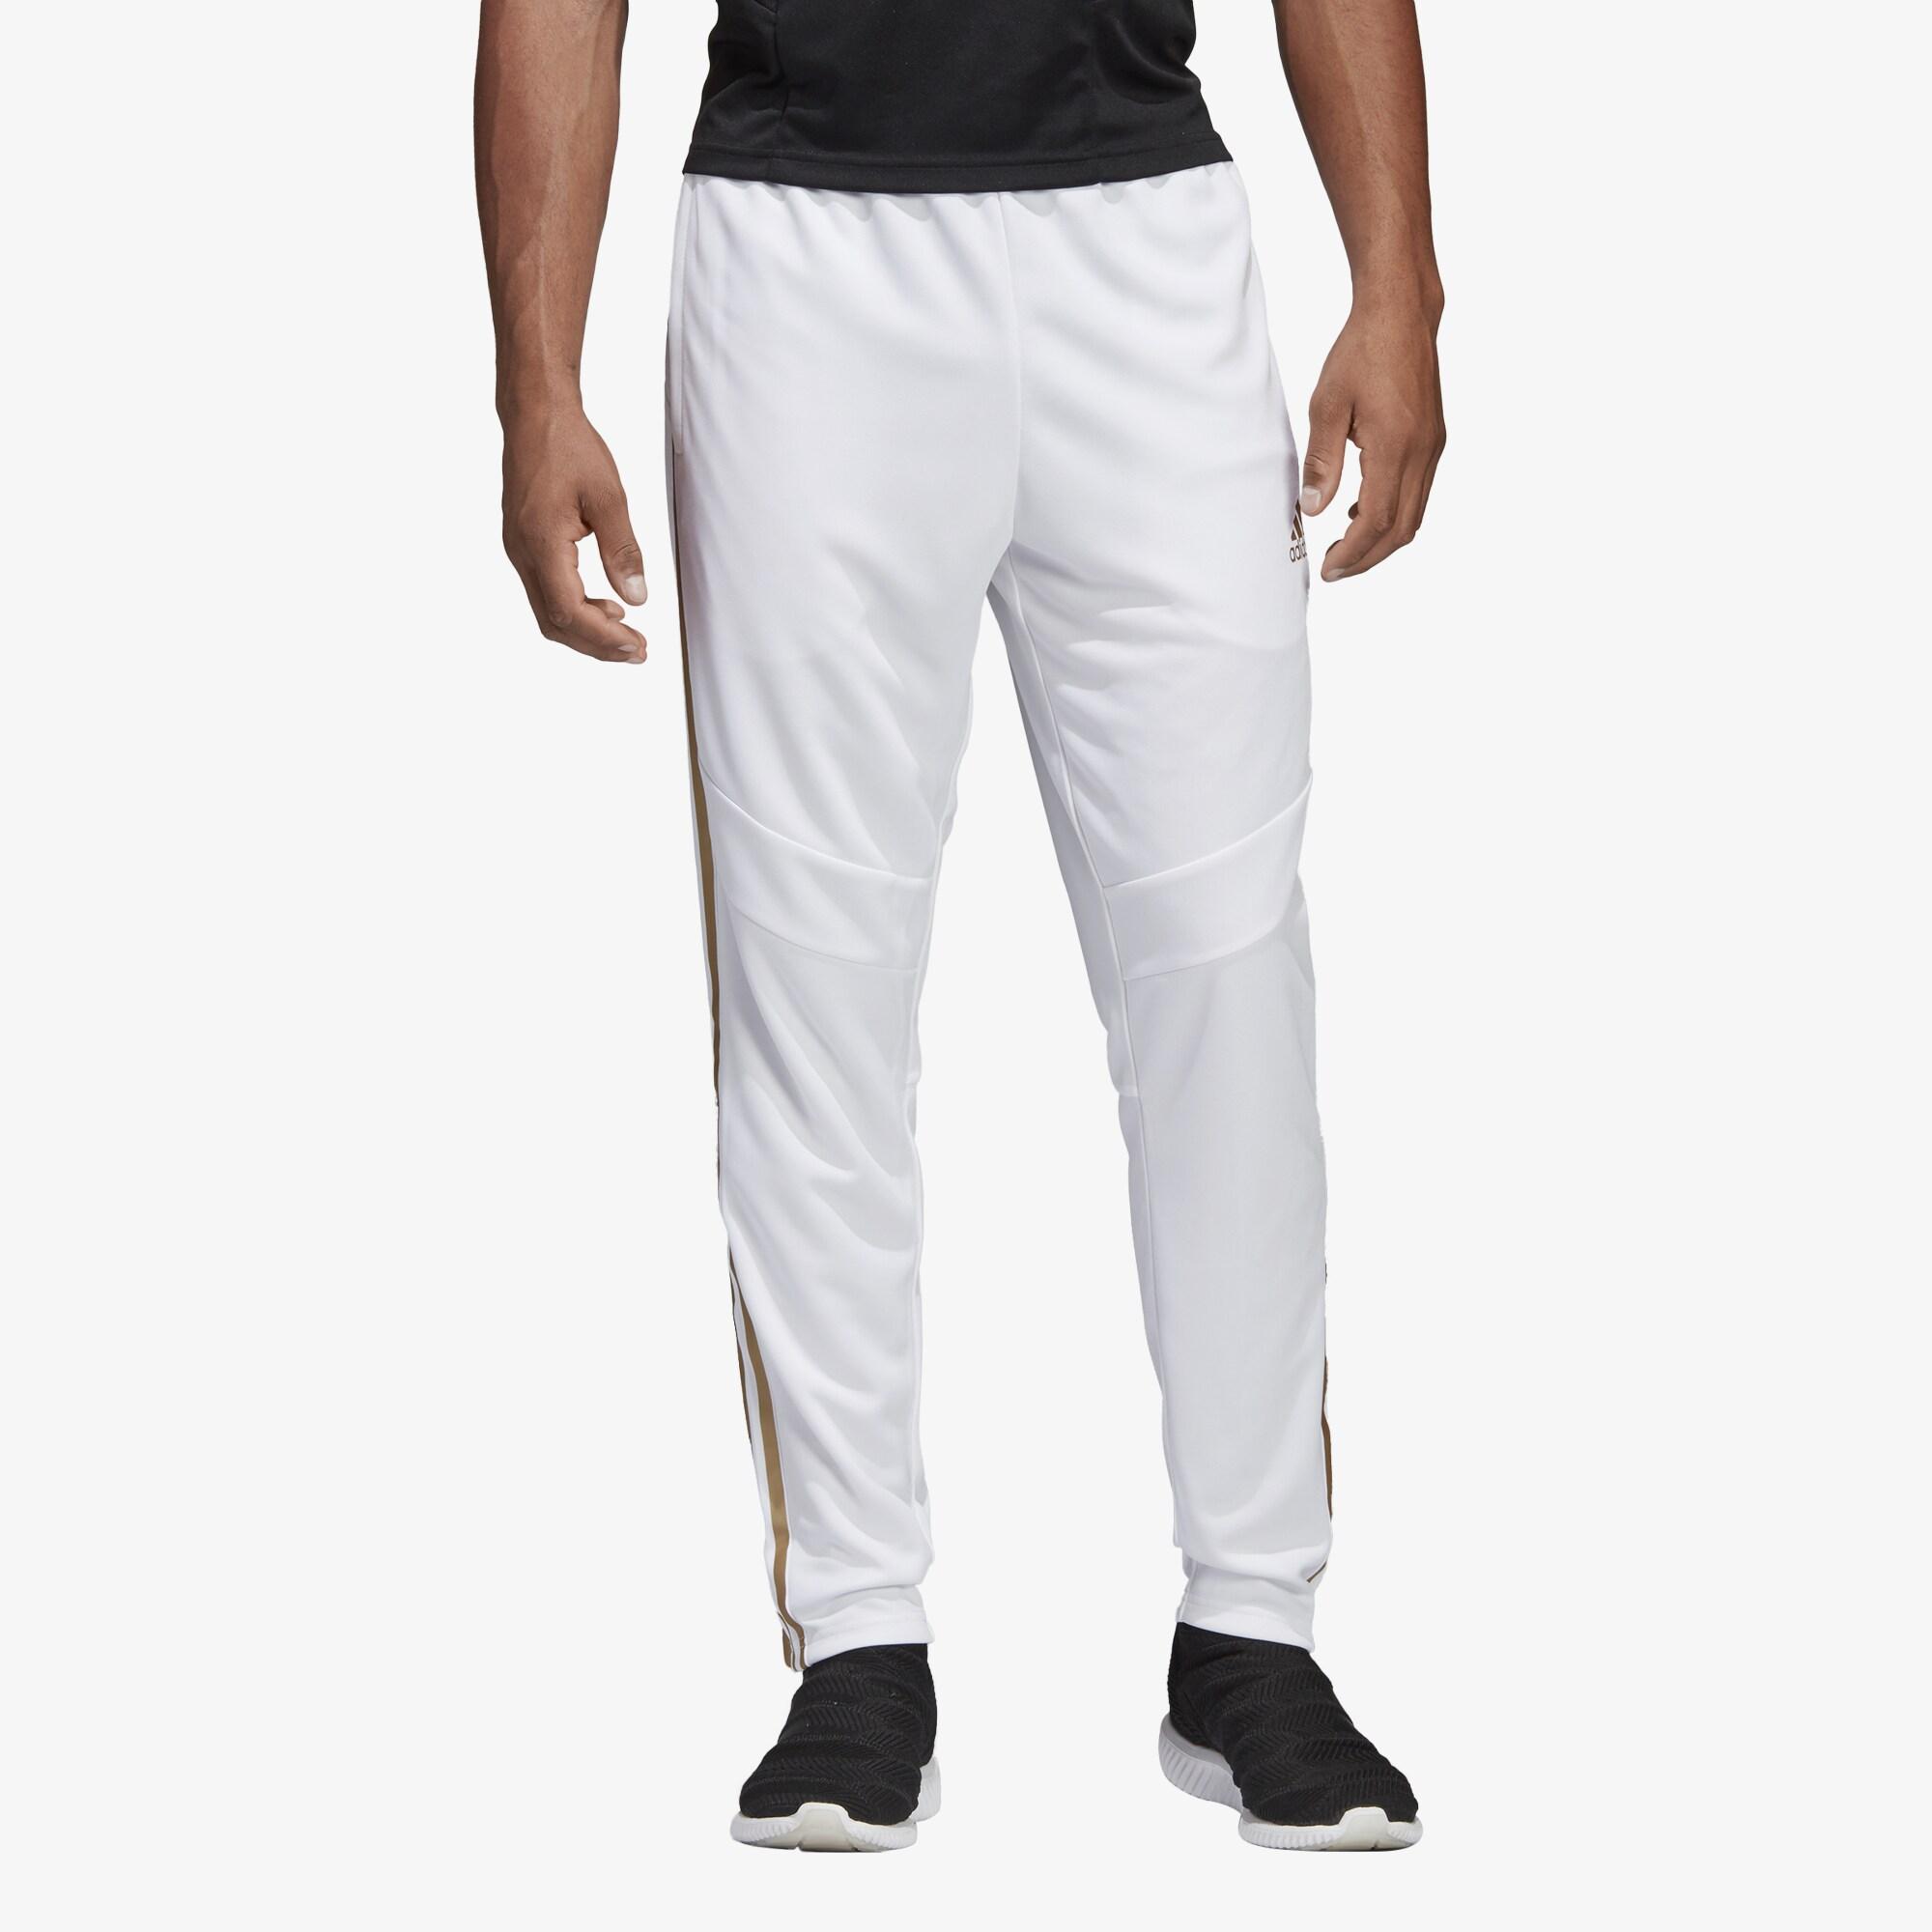 adidas Tiro 19 Pants in White for Men - Lyst